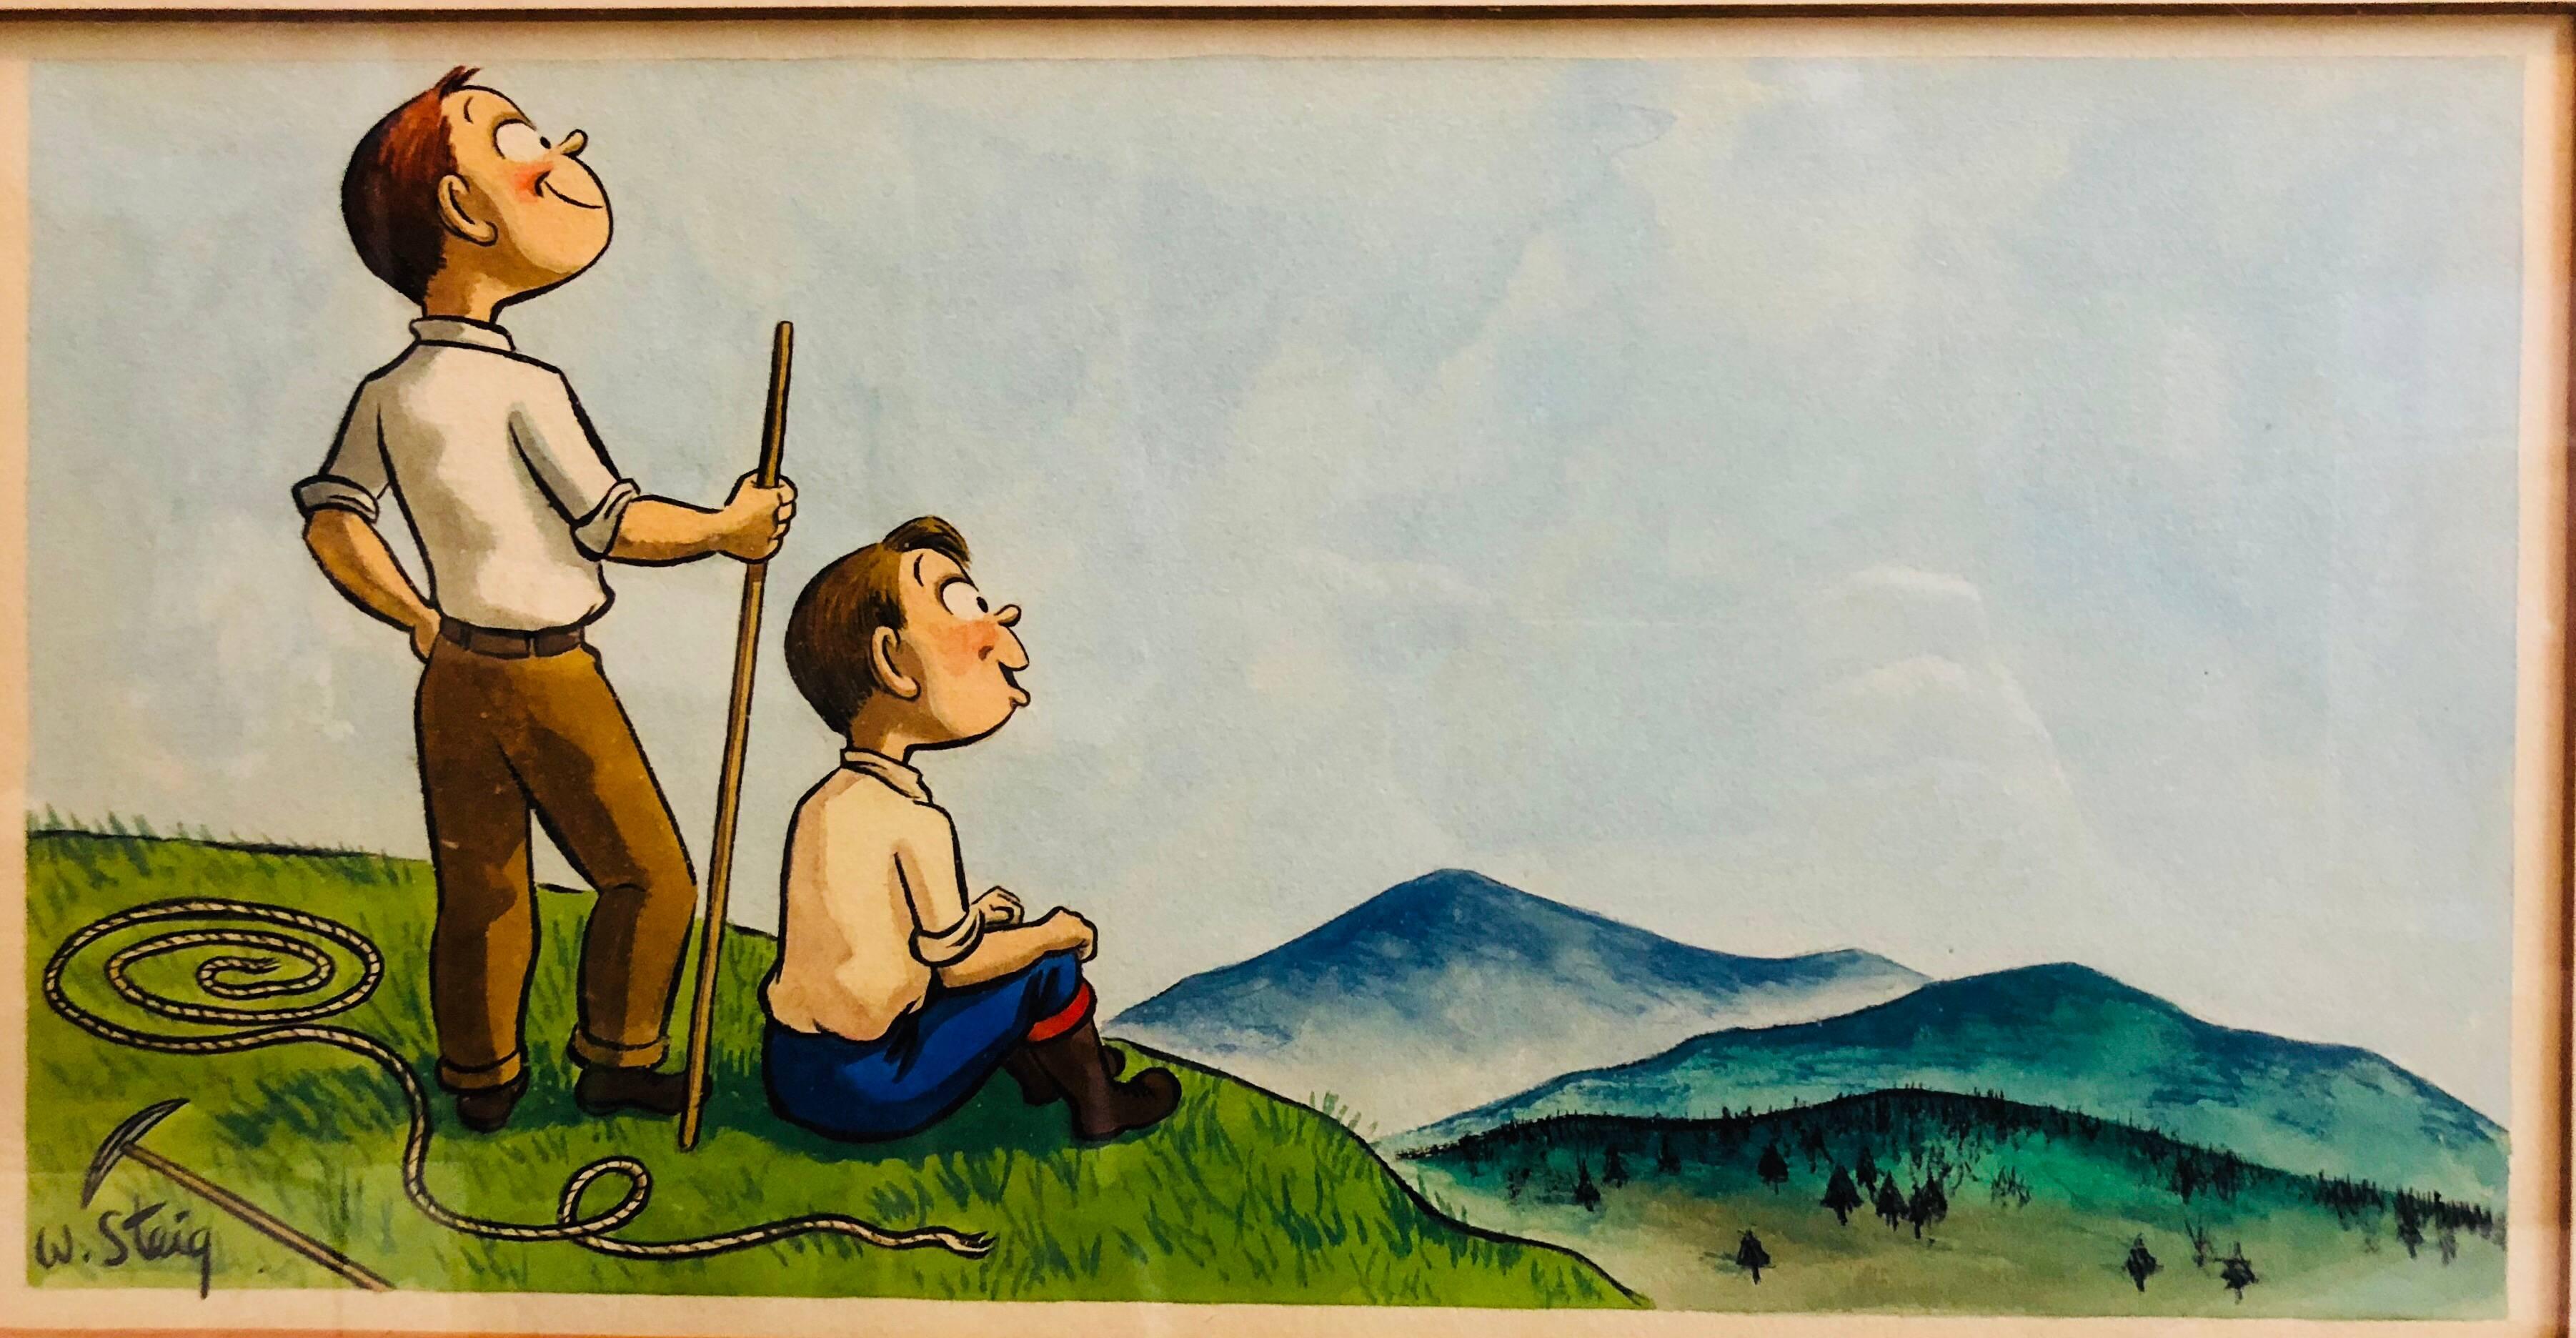 William Steig (b.1907) Figurative Art - Whimsical Illustration Hiking Cartoon, 1938 Mt Tremblant Ski Lodge William Steig